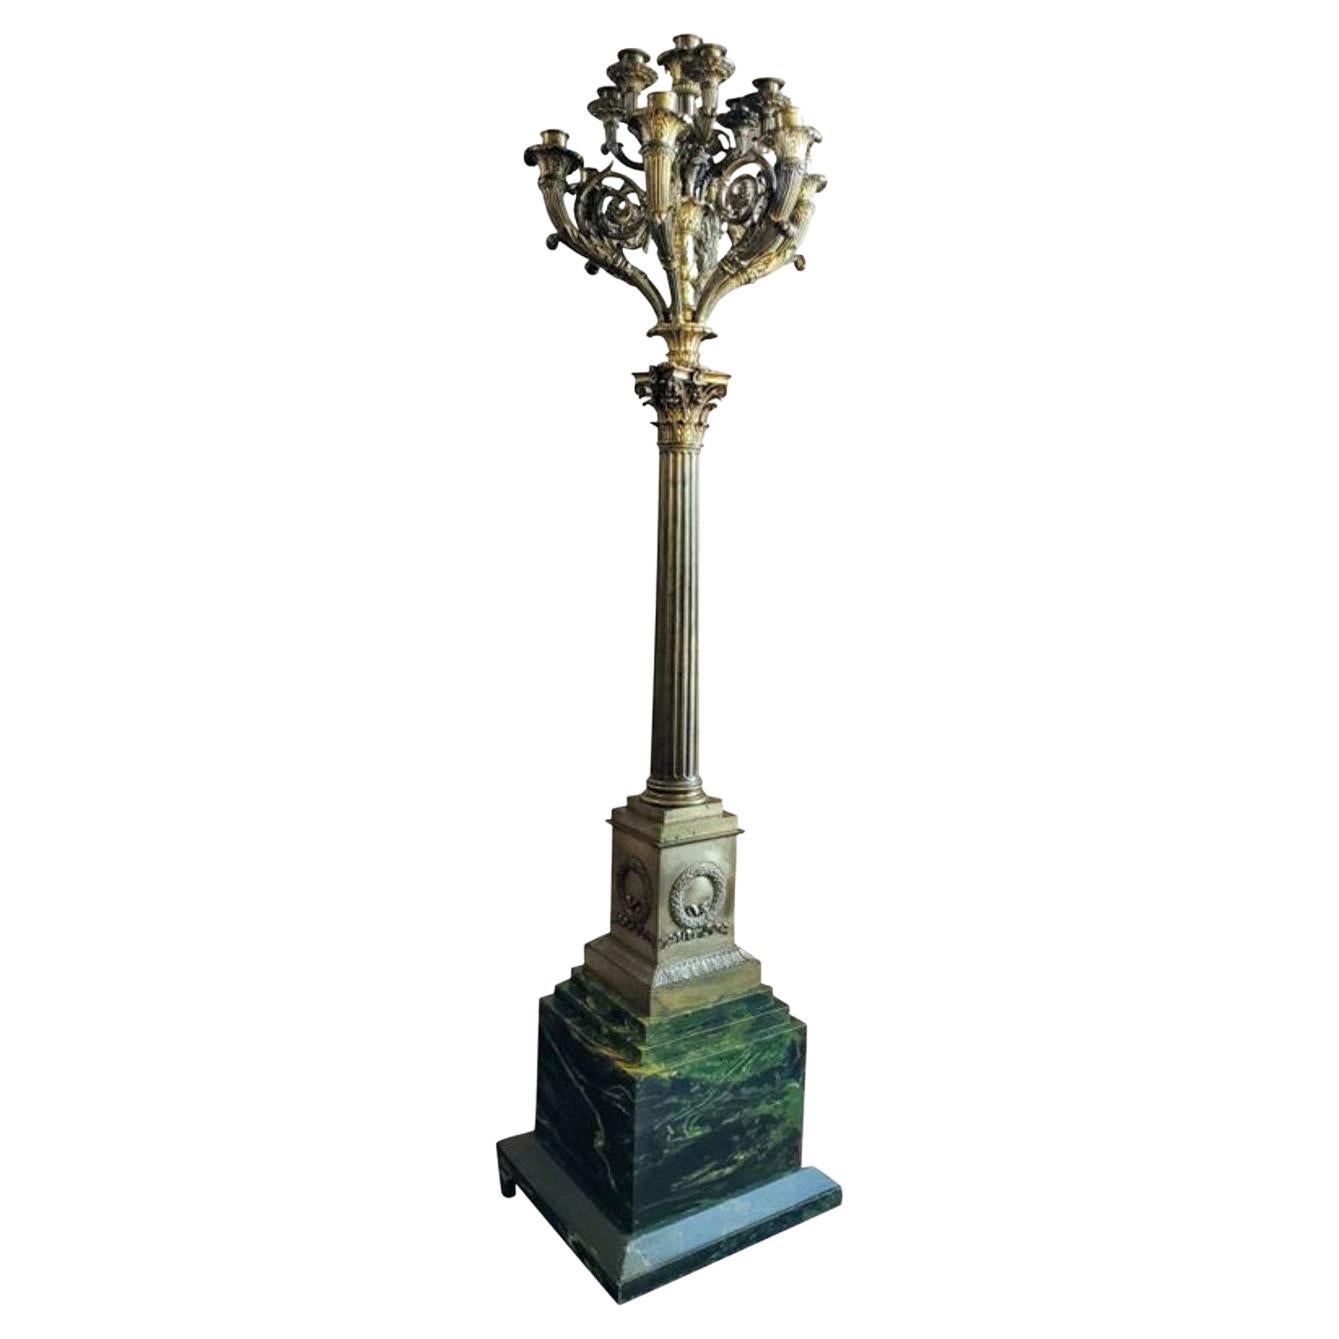 Grand candélabre de sol d'époque Empire français du 19ème siècle